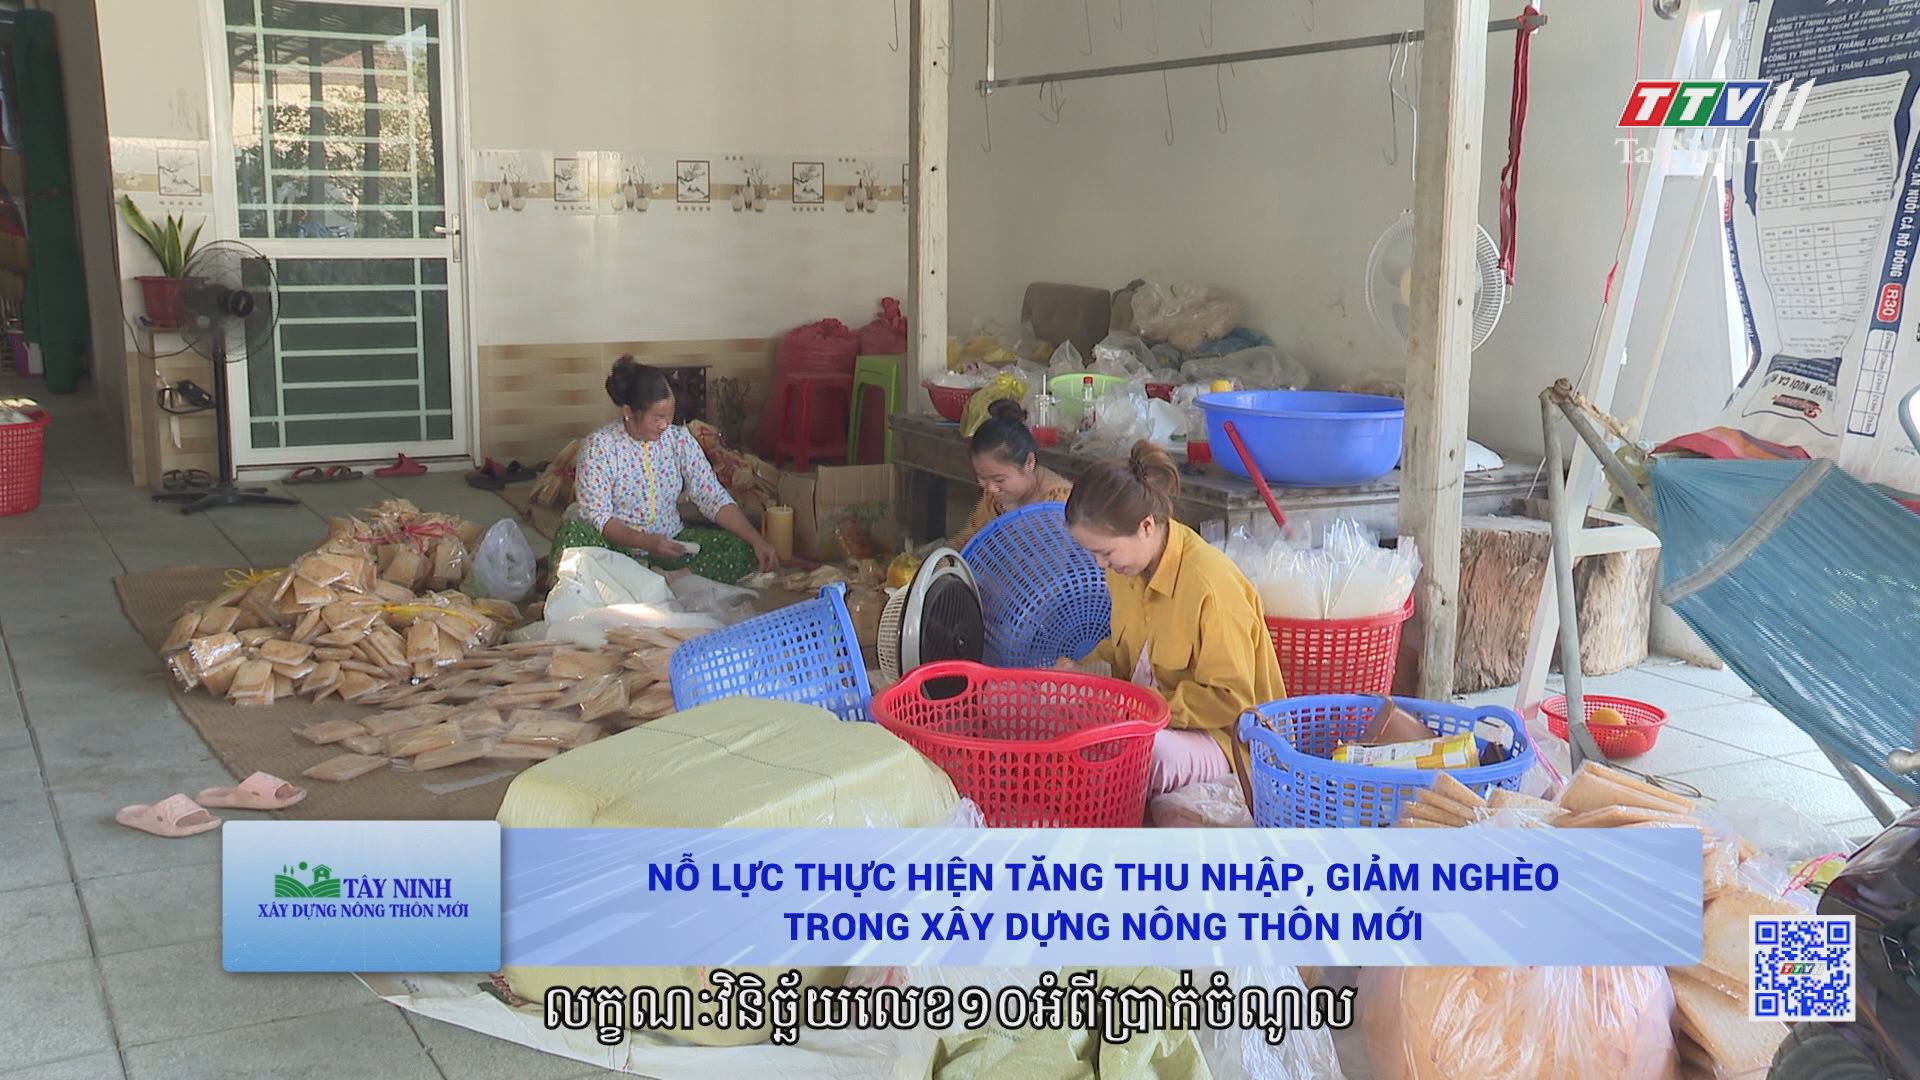 Nỗ lực thực hiện tăng thu nhập, giảm nghèo trong xây dựng nông thôn mới | TÂY NINH XÂY DỰNG NÔNG THÔN MỚI | TayNinhTVToday